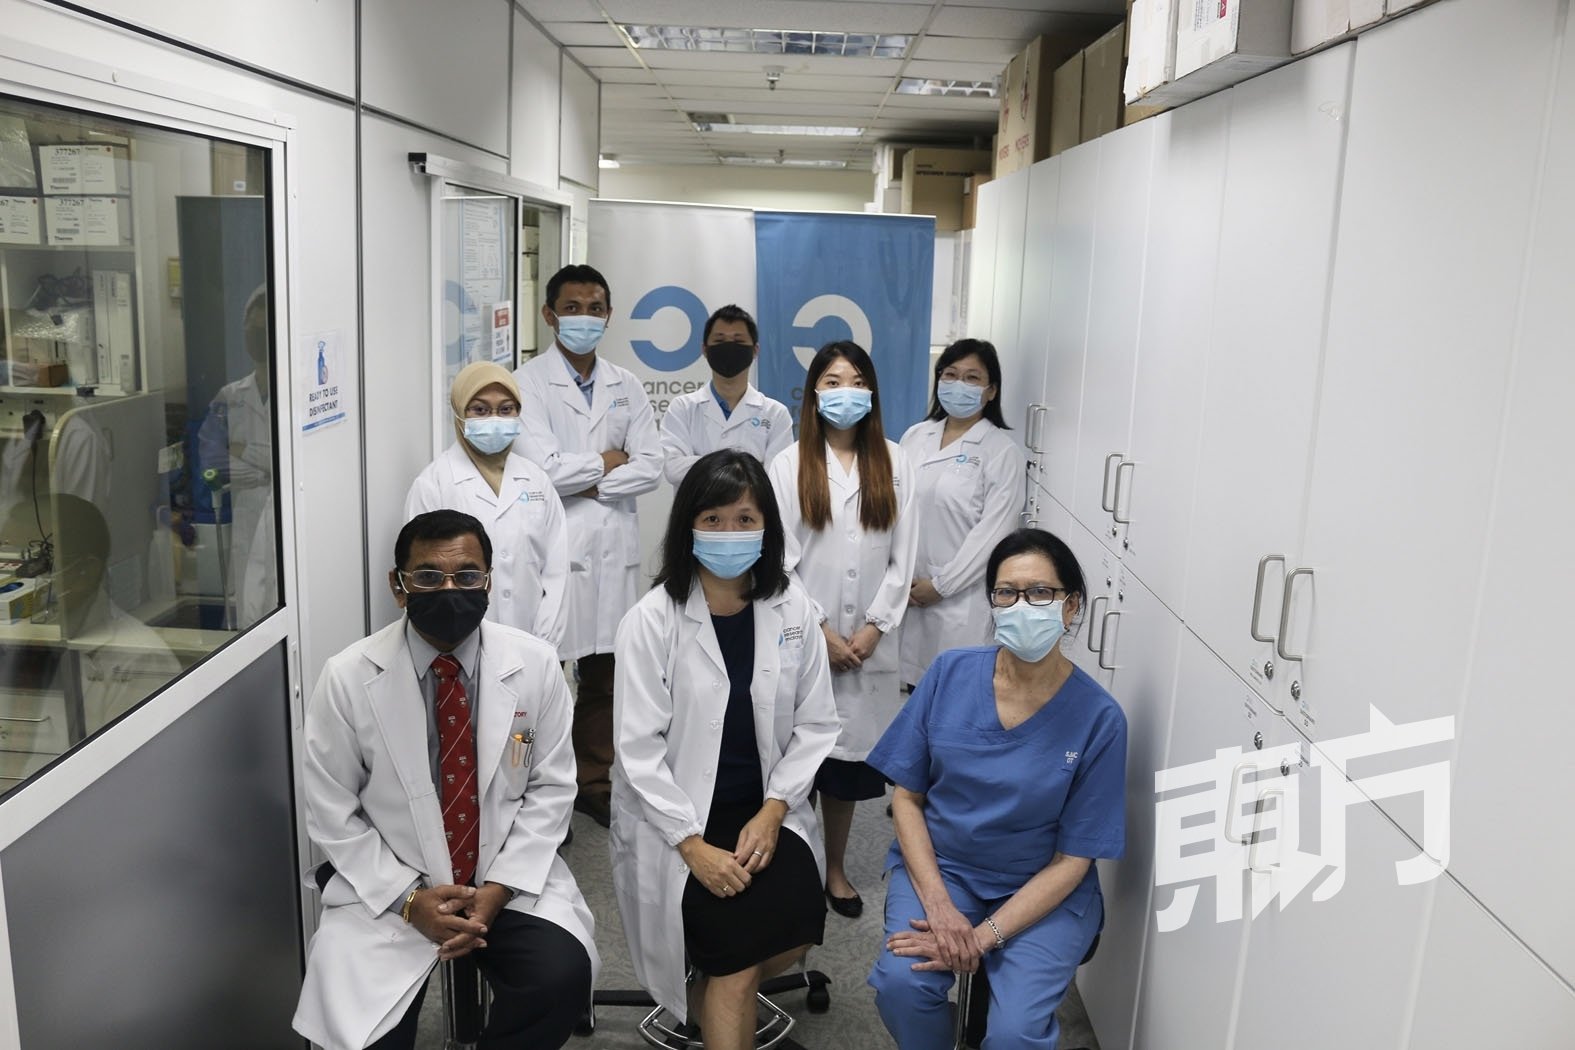 马来西亚癌症研究机构团队致力专研亚裔癌症及基因，期待日后可提高更多亚裔癌患的生存与治愈率。